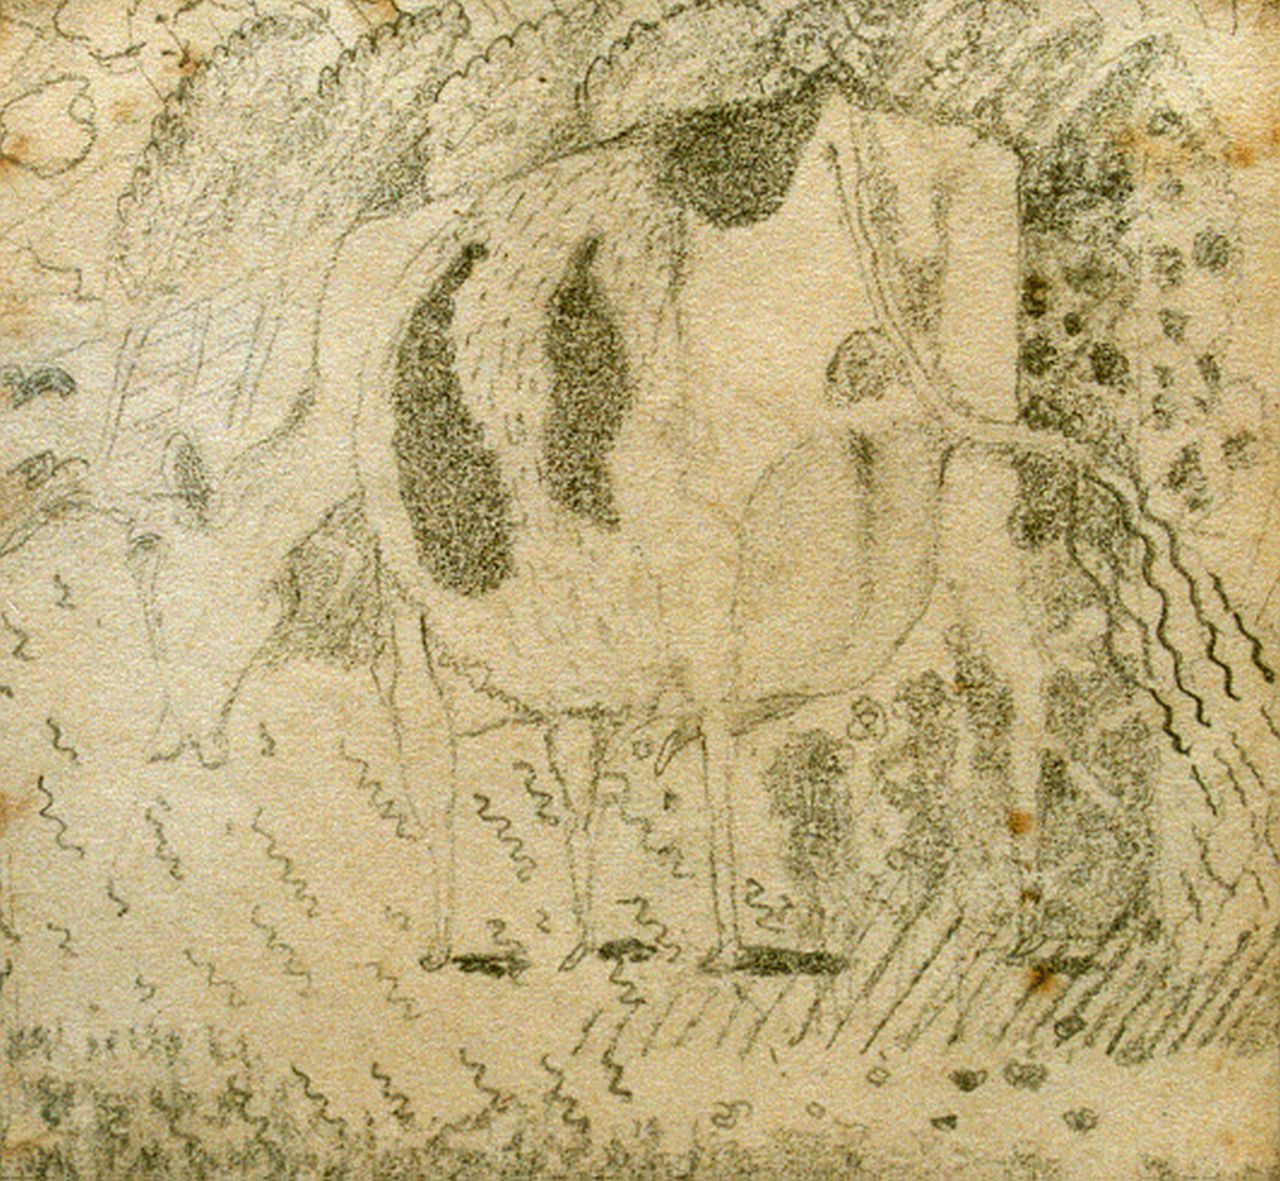 Kruyder H.J.  | 'Herman' Justus Kruyder, Grazende koe, potlood op papier 11,3 x 11,0 cm, gesigneerd rechtsonder en gedateerd 1927